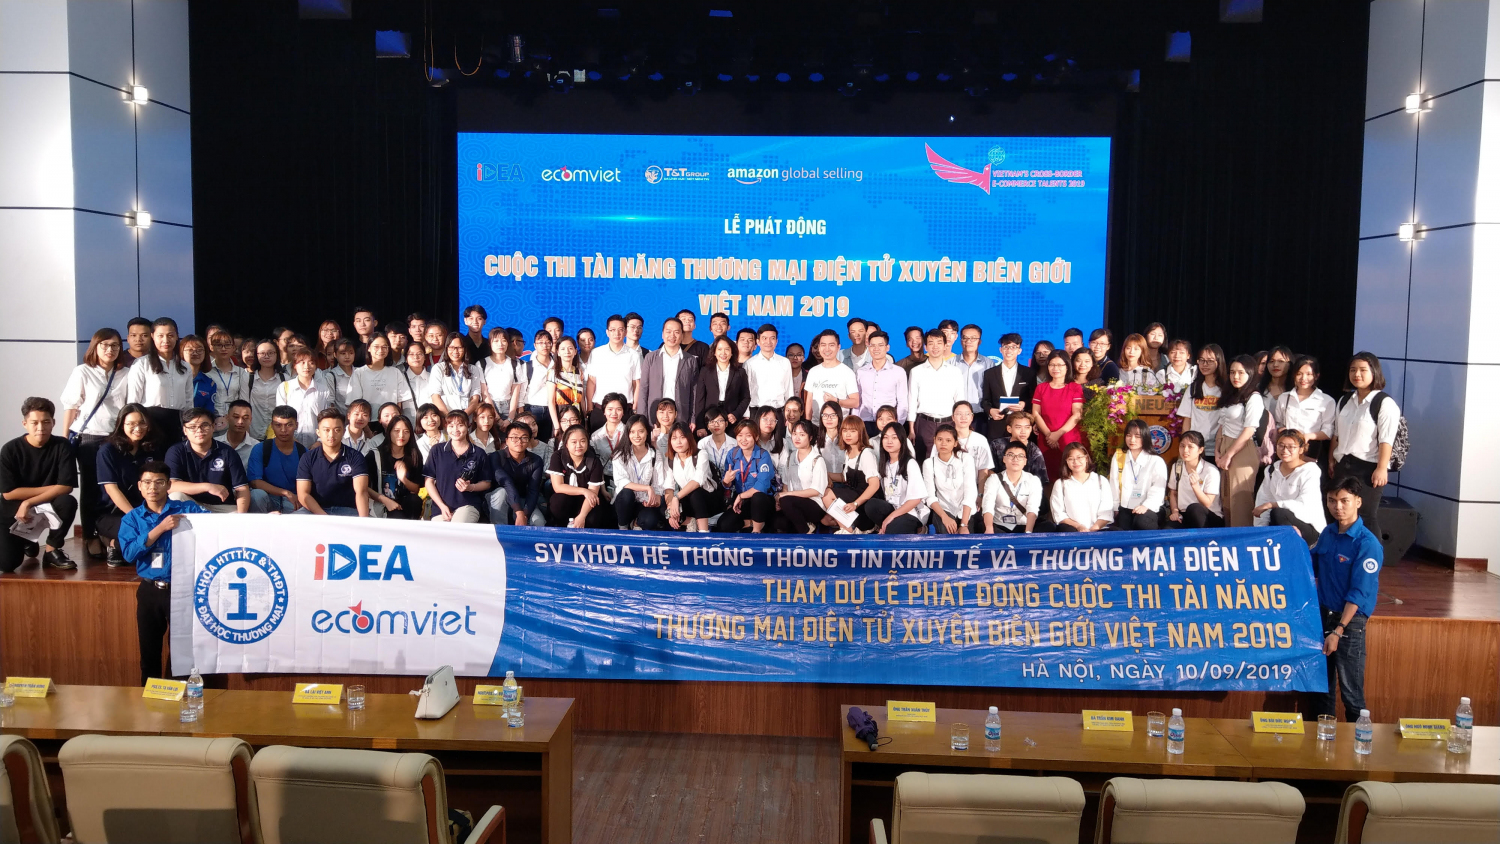 Lễ phát động cuộc thi “Tài năng thương mại điện tử xuyên biên giới Việt Nam 2019”